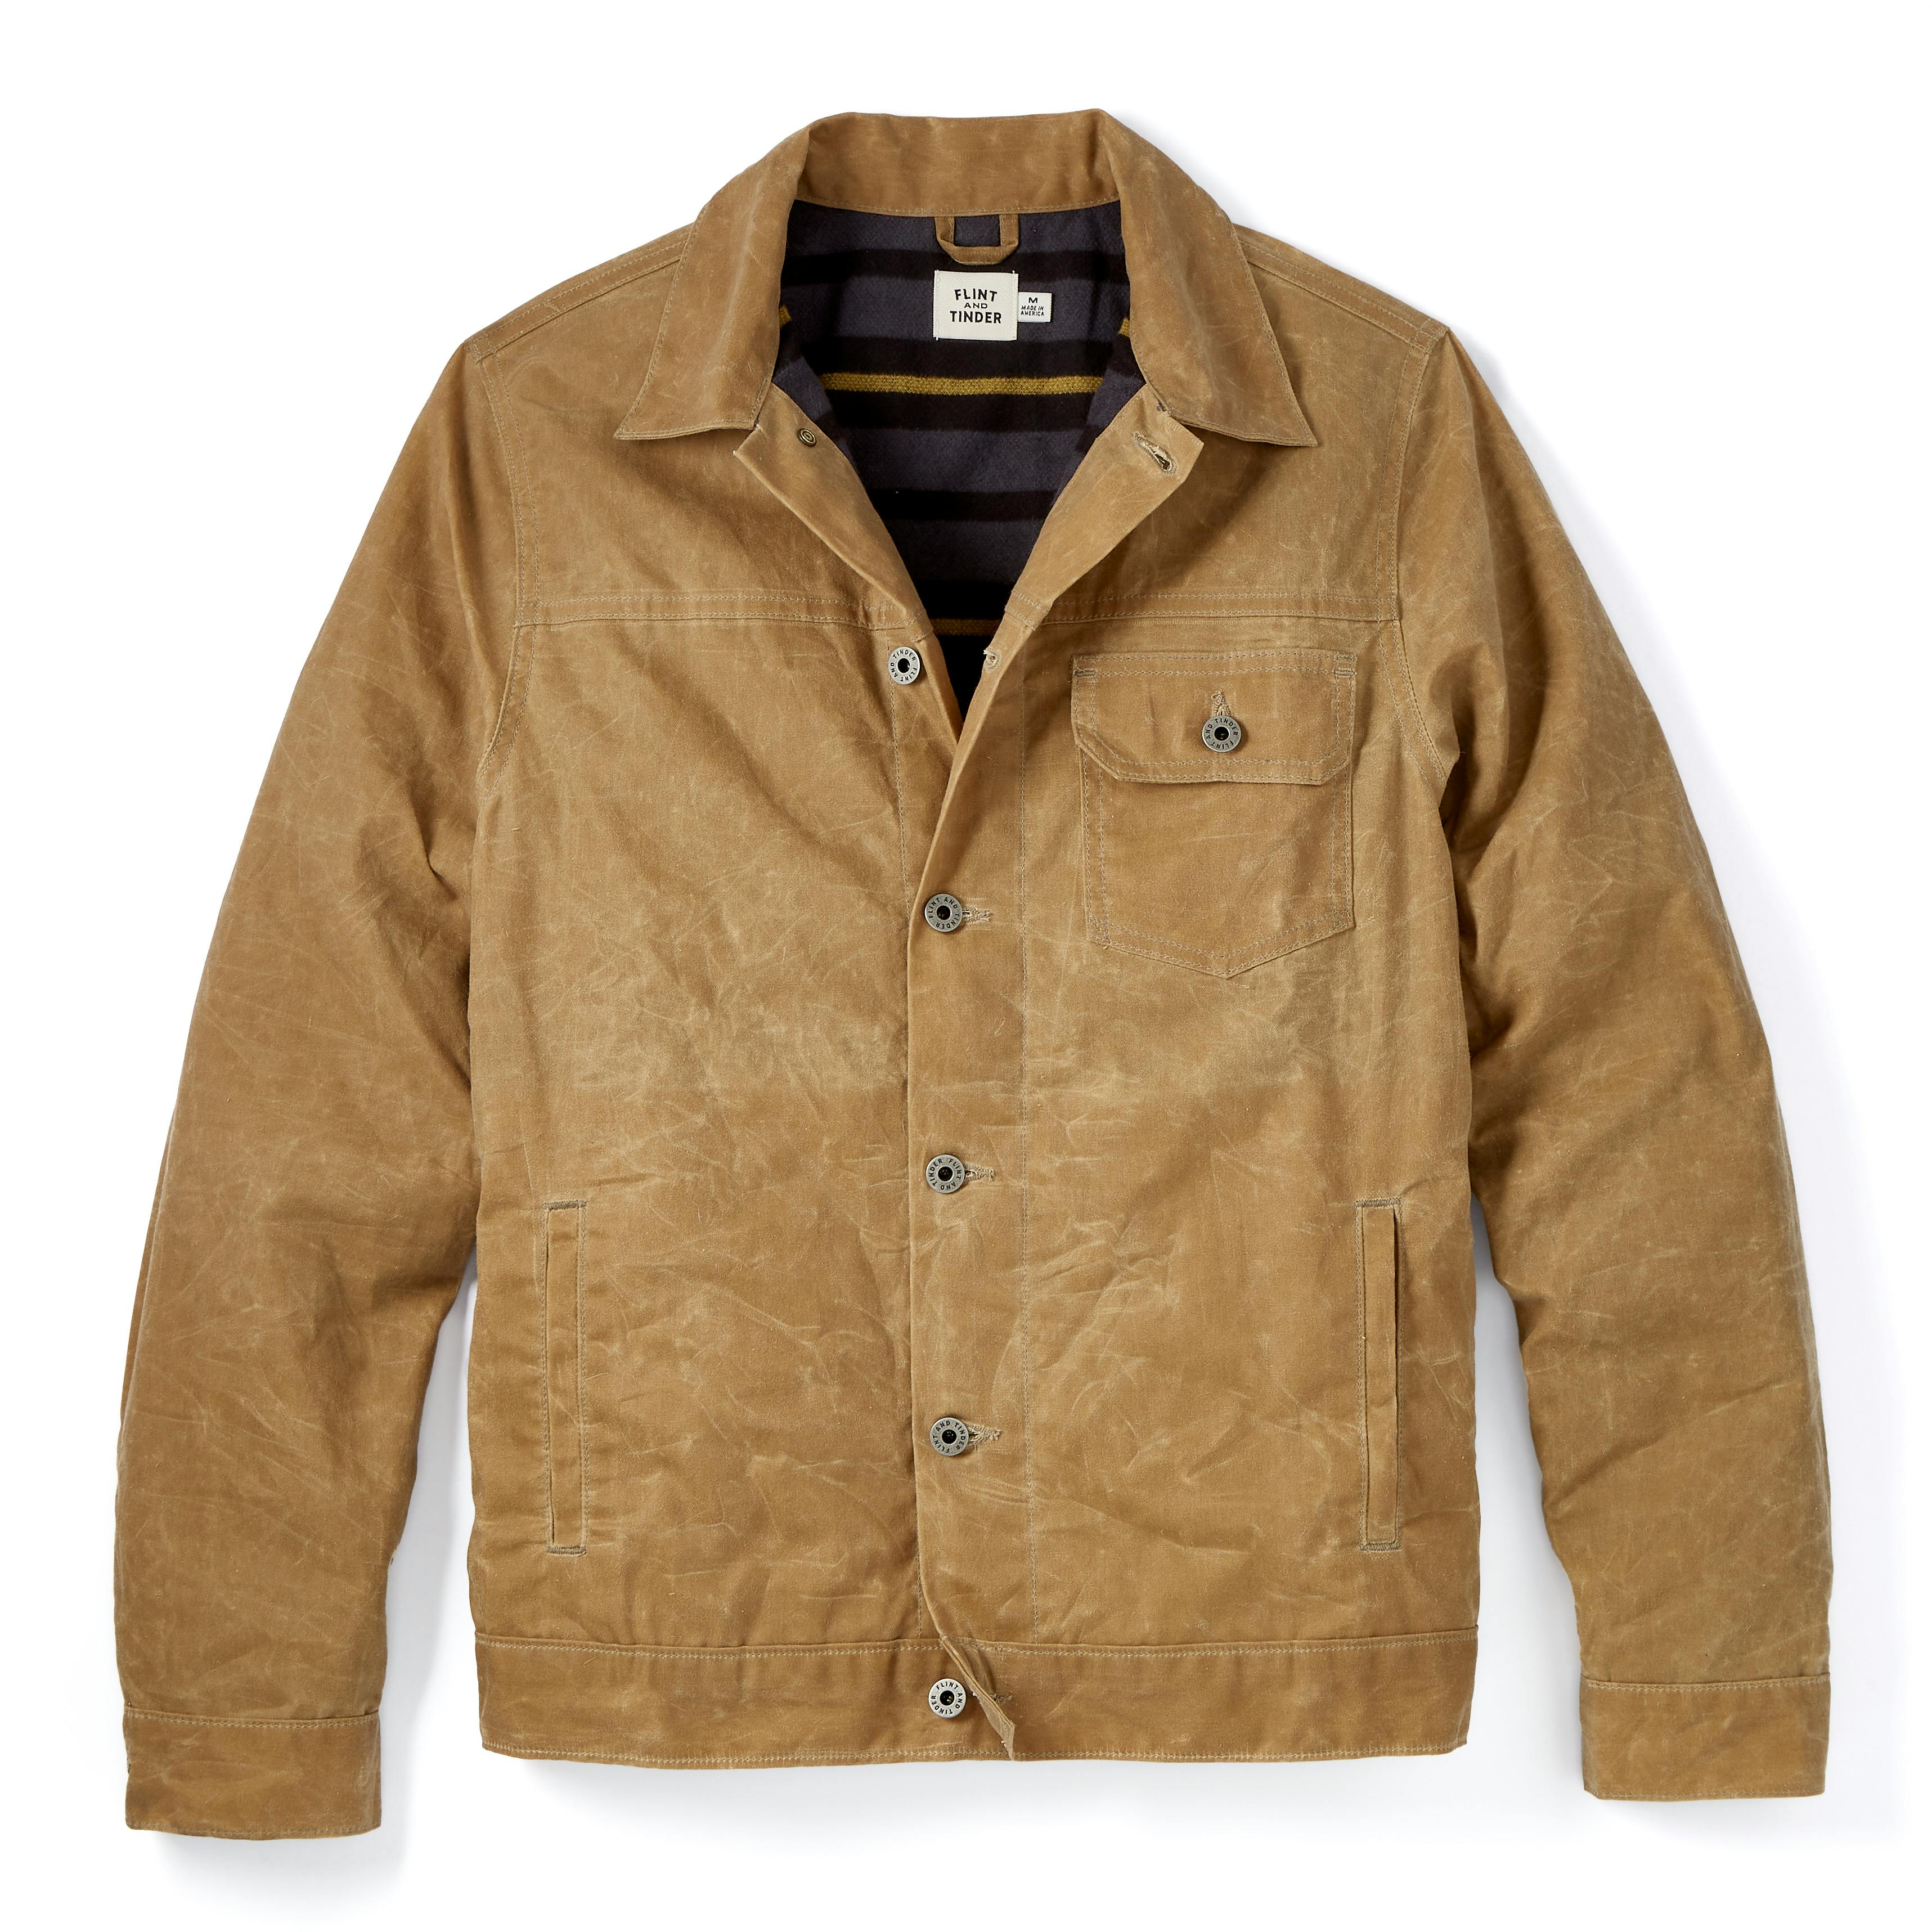 Monogram Leather Trucker Jacket - Men - Ready-to-Wear